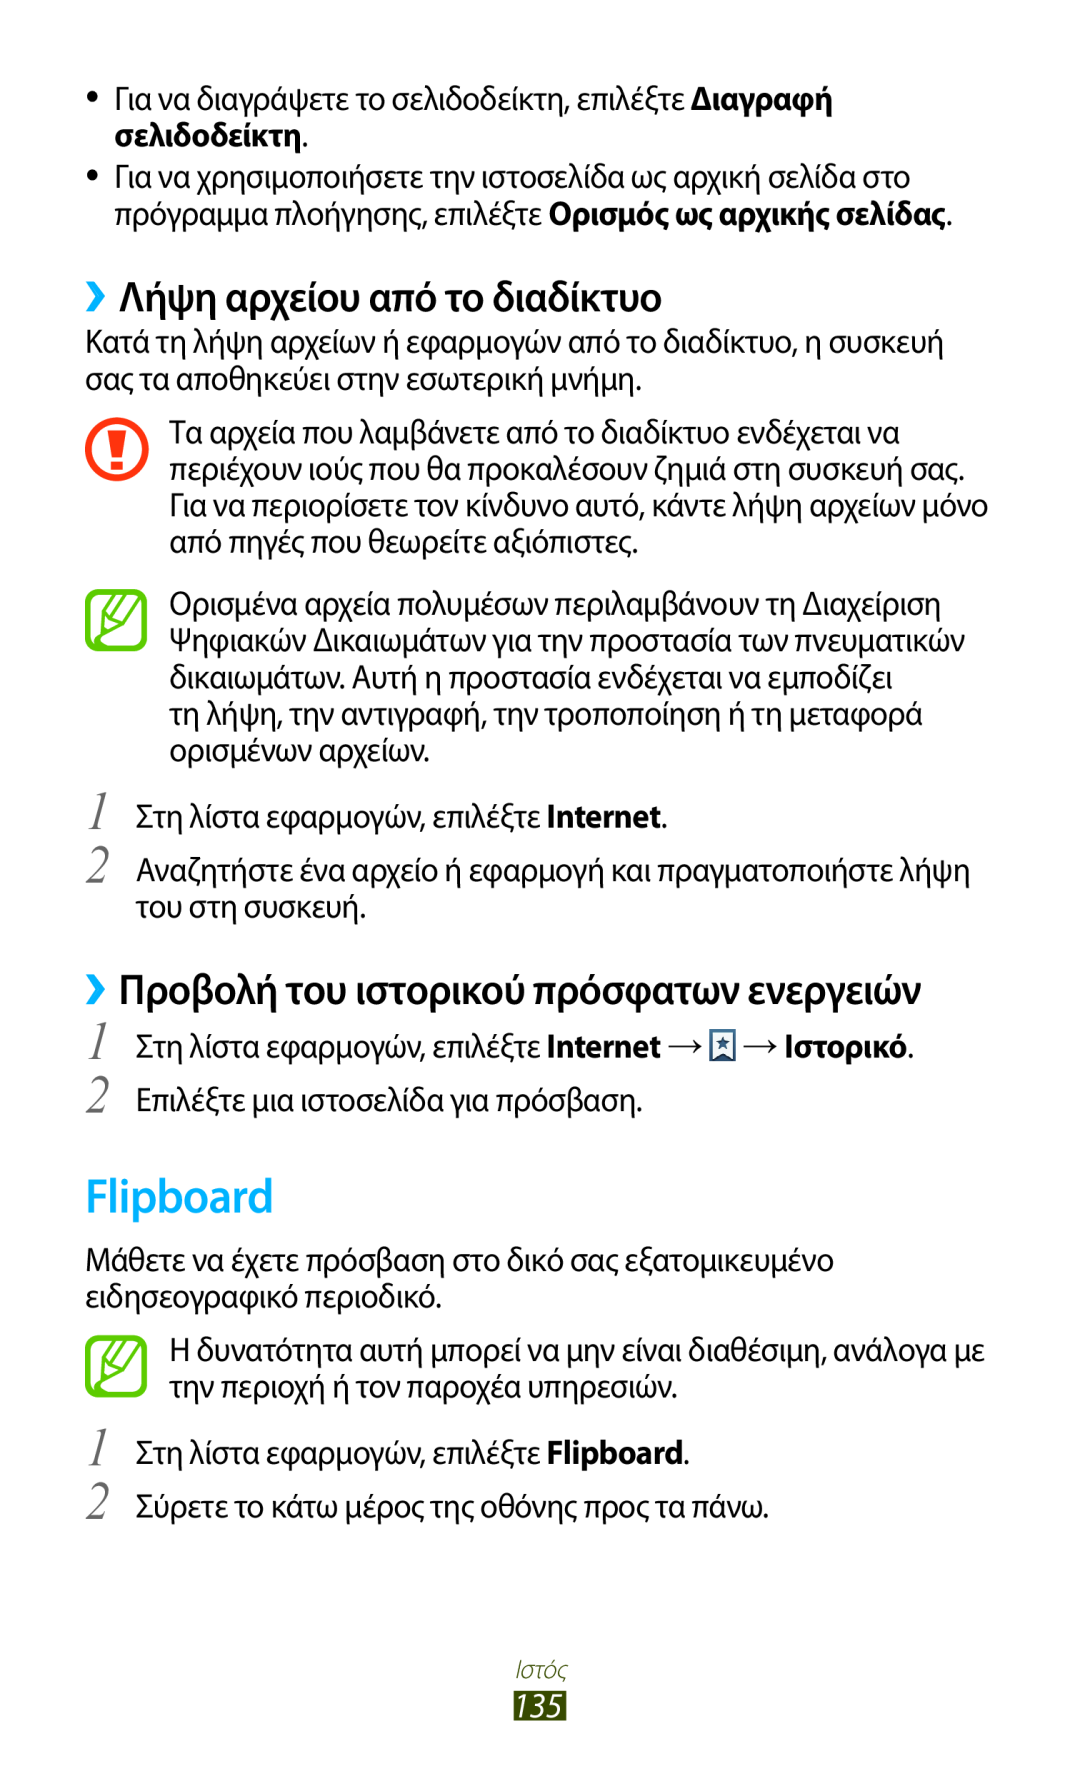 Samsung GT-N7000ZBAEUR manual Flipboard, ››Λήψη αρχείου από το διαδίκτυο, ››Προβολή του ιστορικού πρόσφατων ενεργειών 